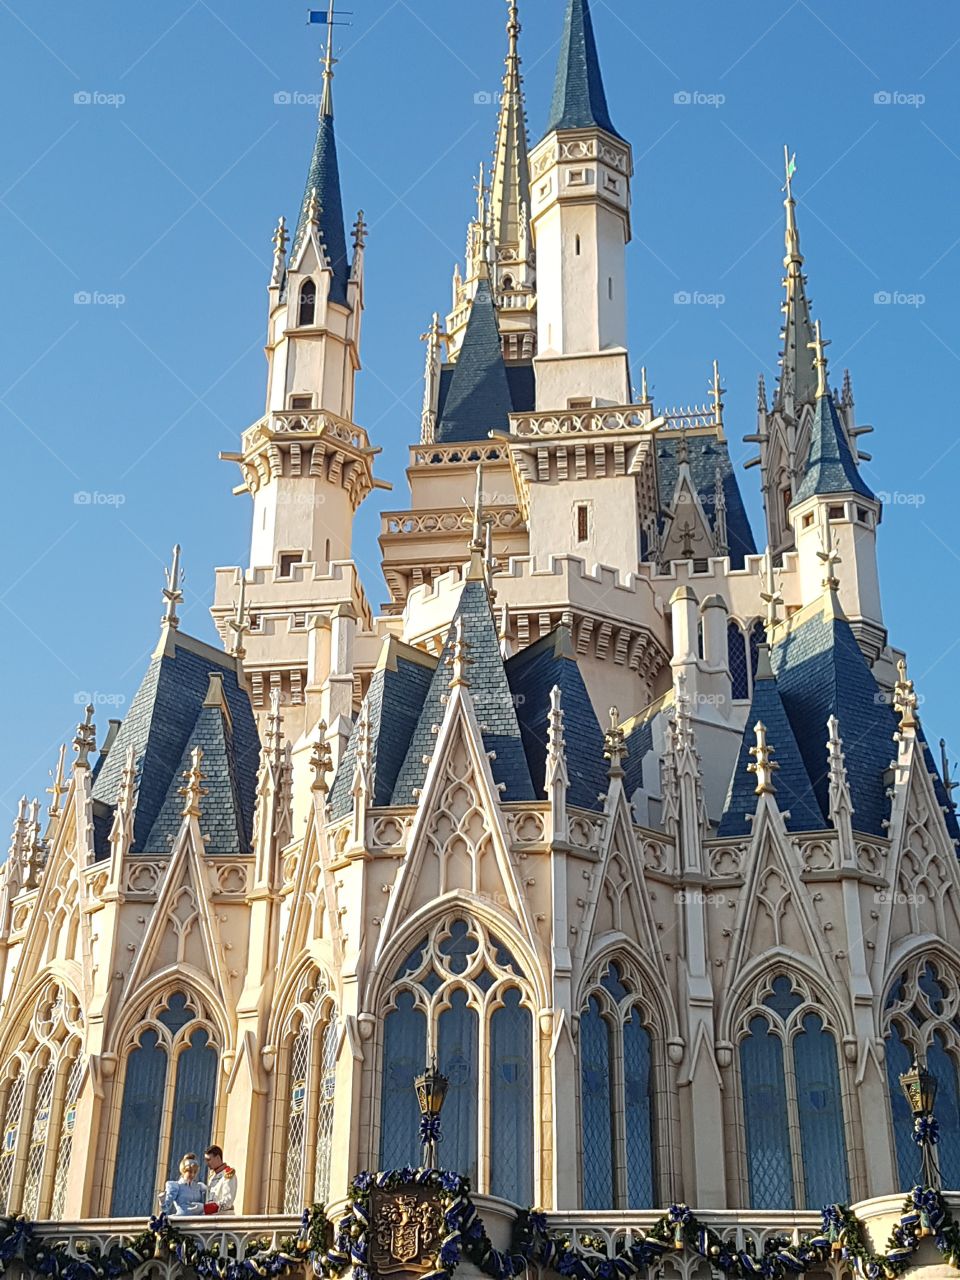 Cinderella’s castle in Disney Tokyo